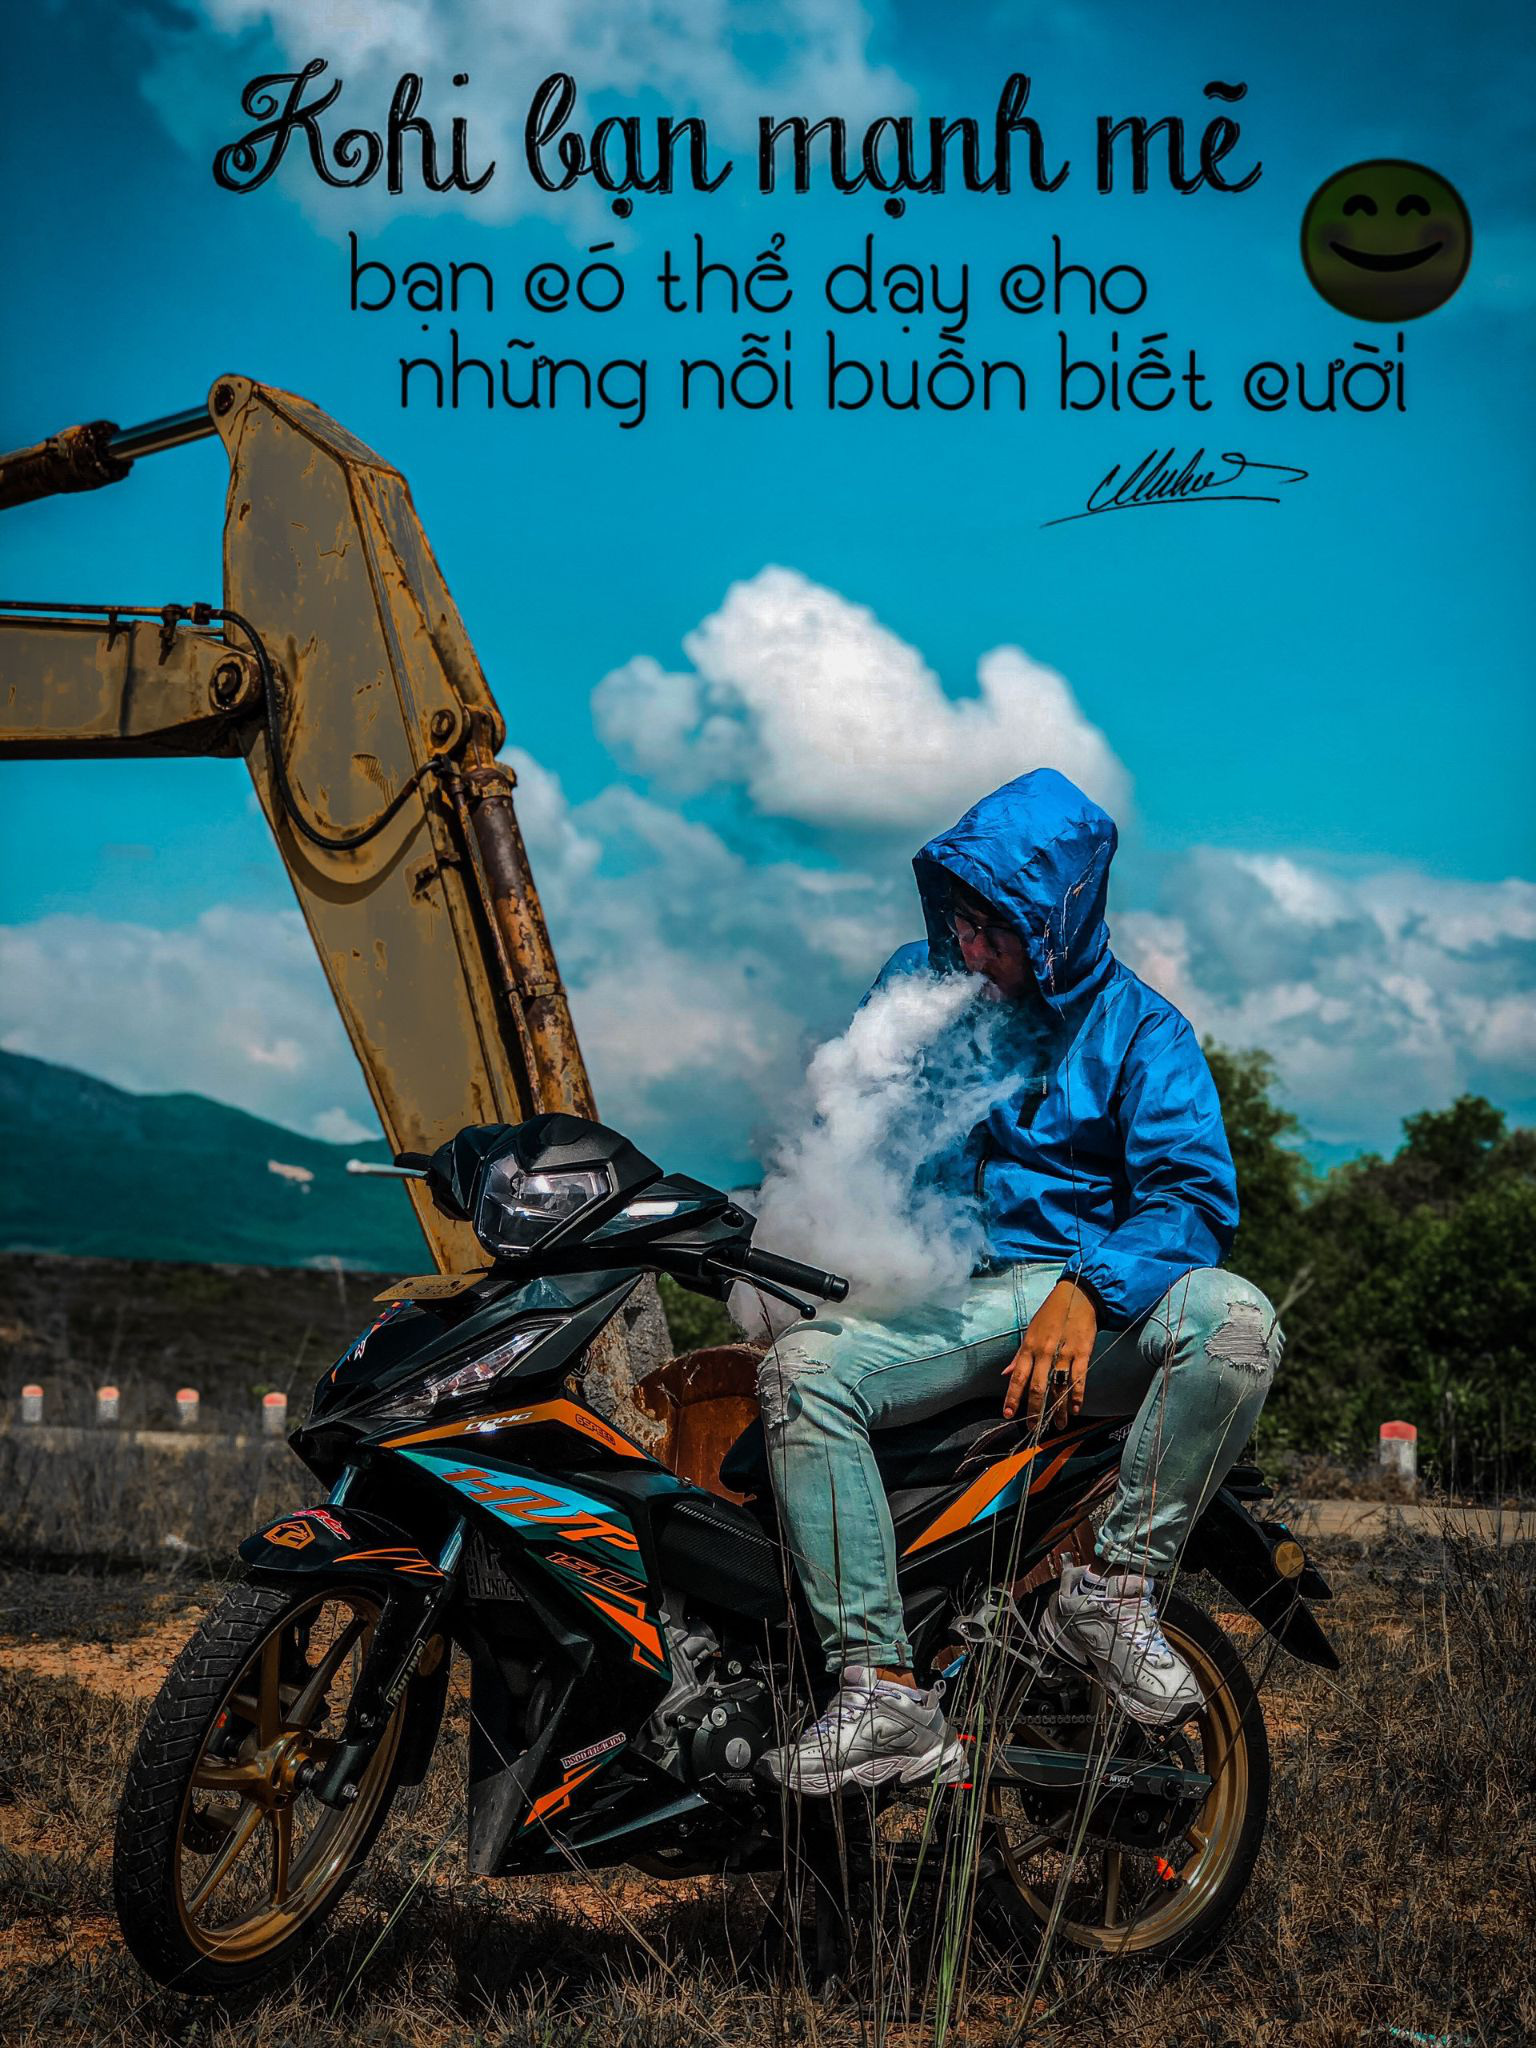 biker-viet-khang-dinh-chat-rieng-voi-xe-do-1e3-5724578.jpg